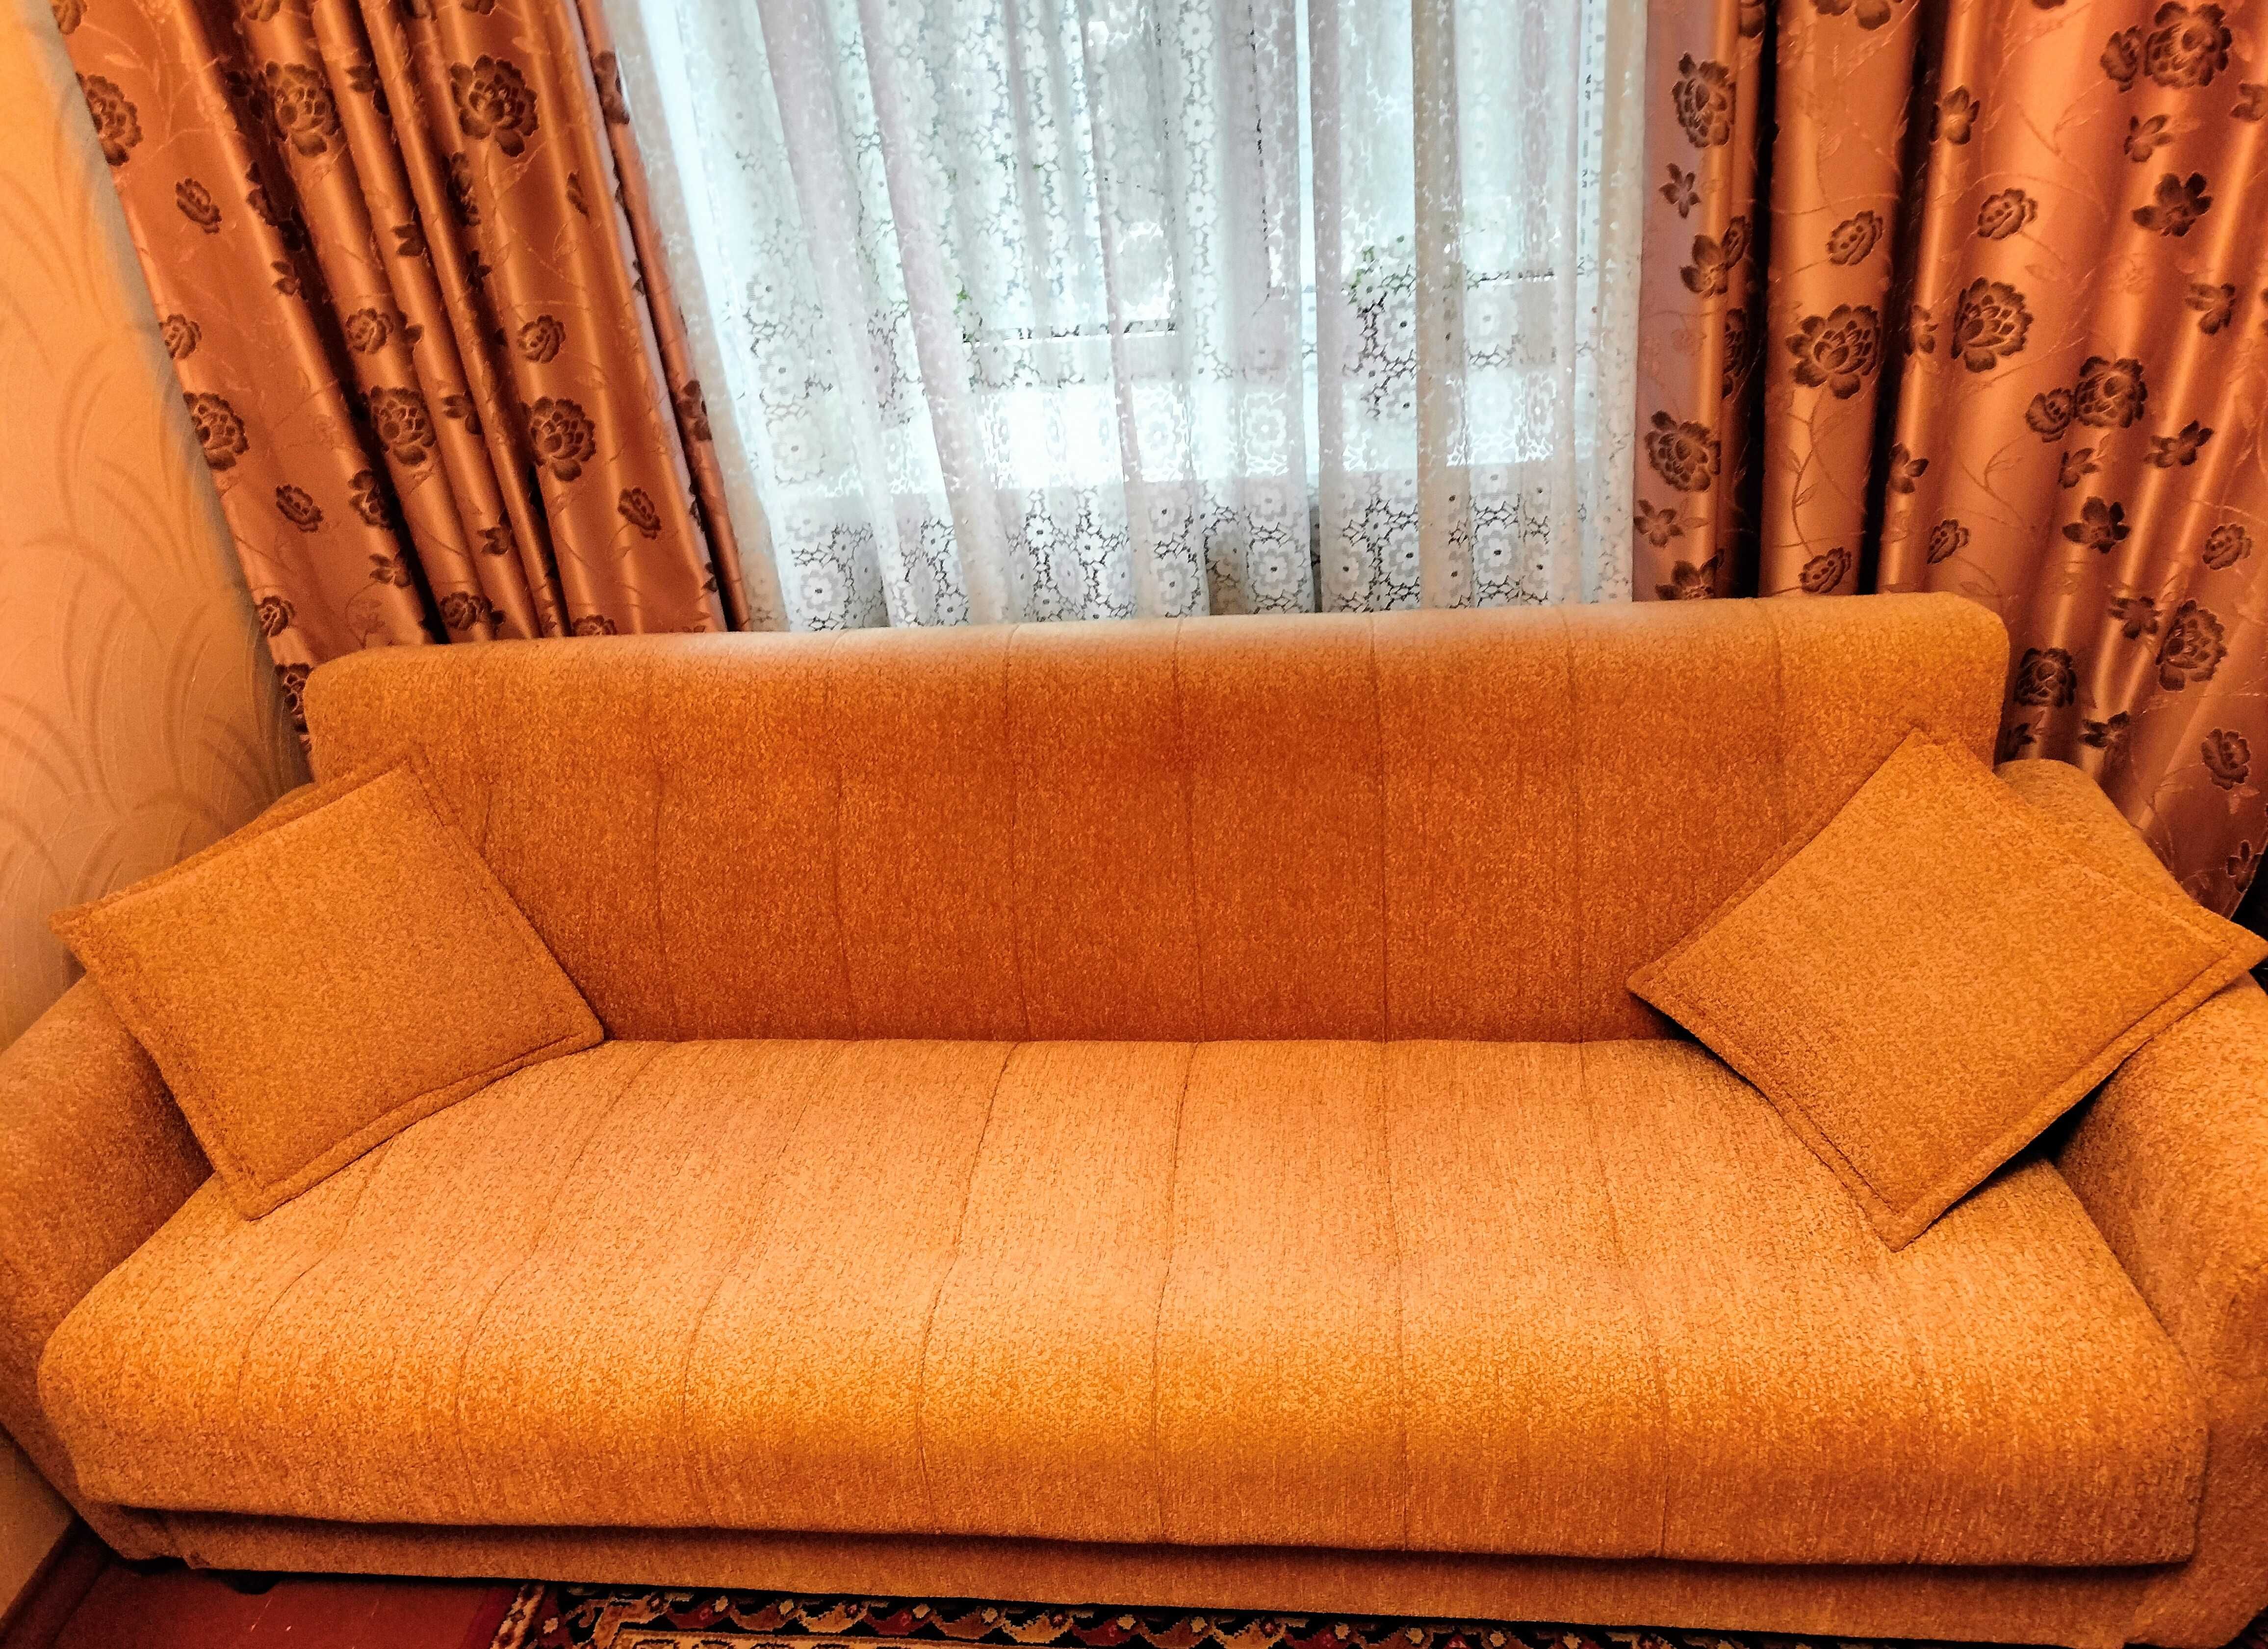 Продам диван раскладной из массива дерева в отличном состоянии, дл2,2м